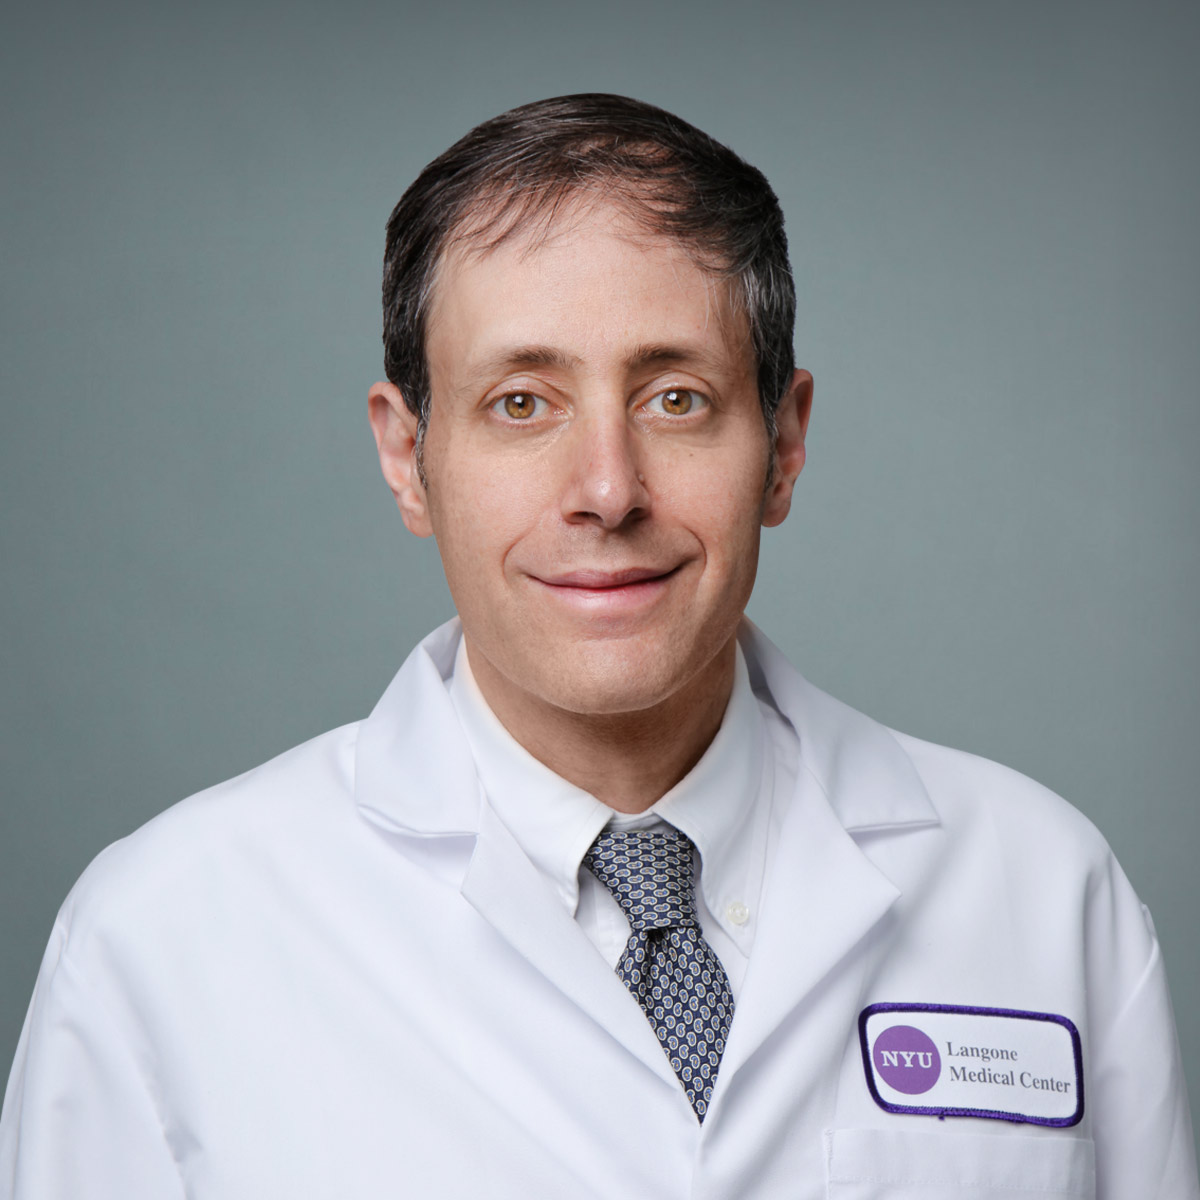 David J. Araten,MD. Hematology